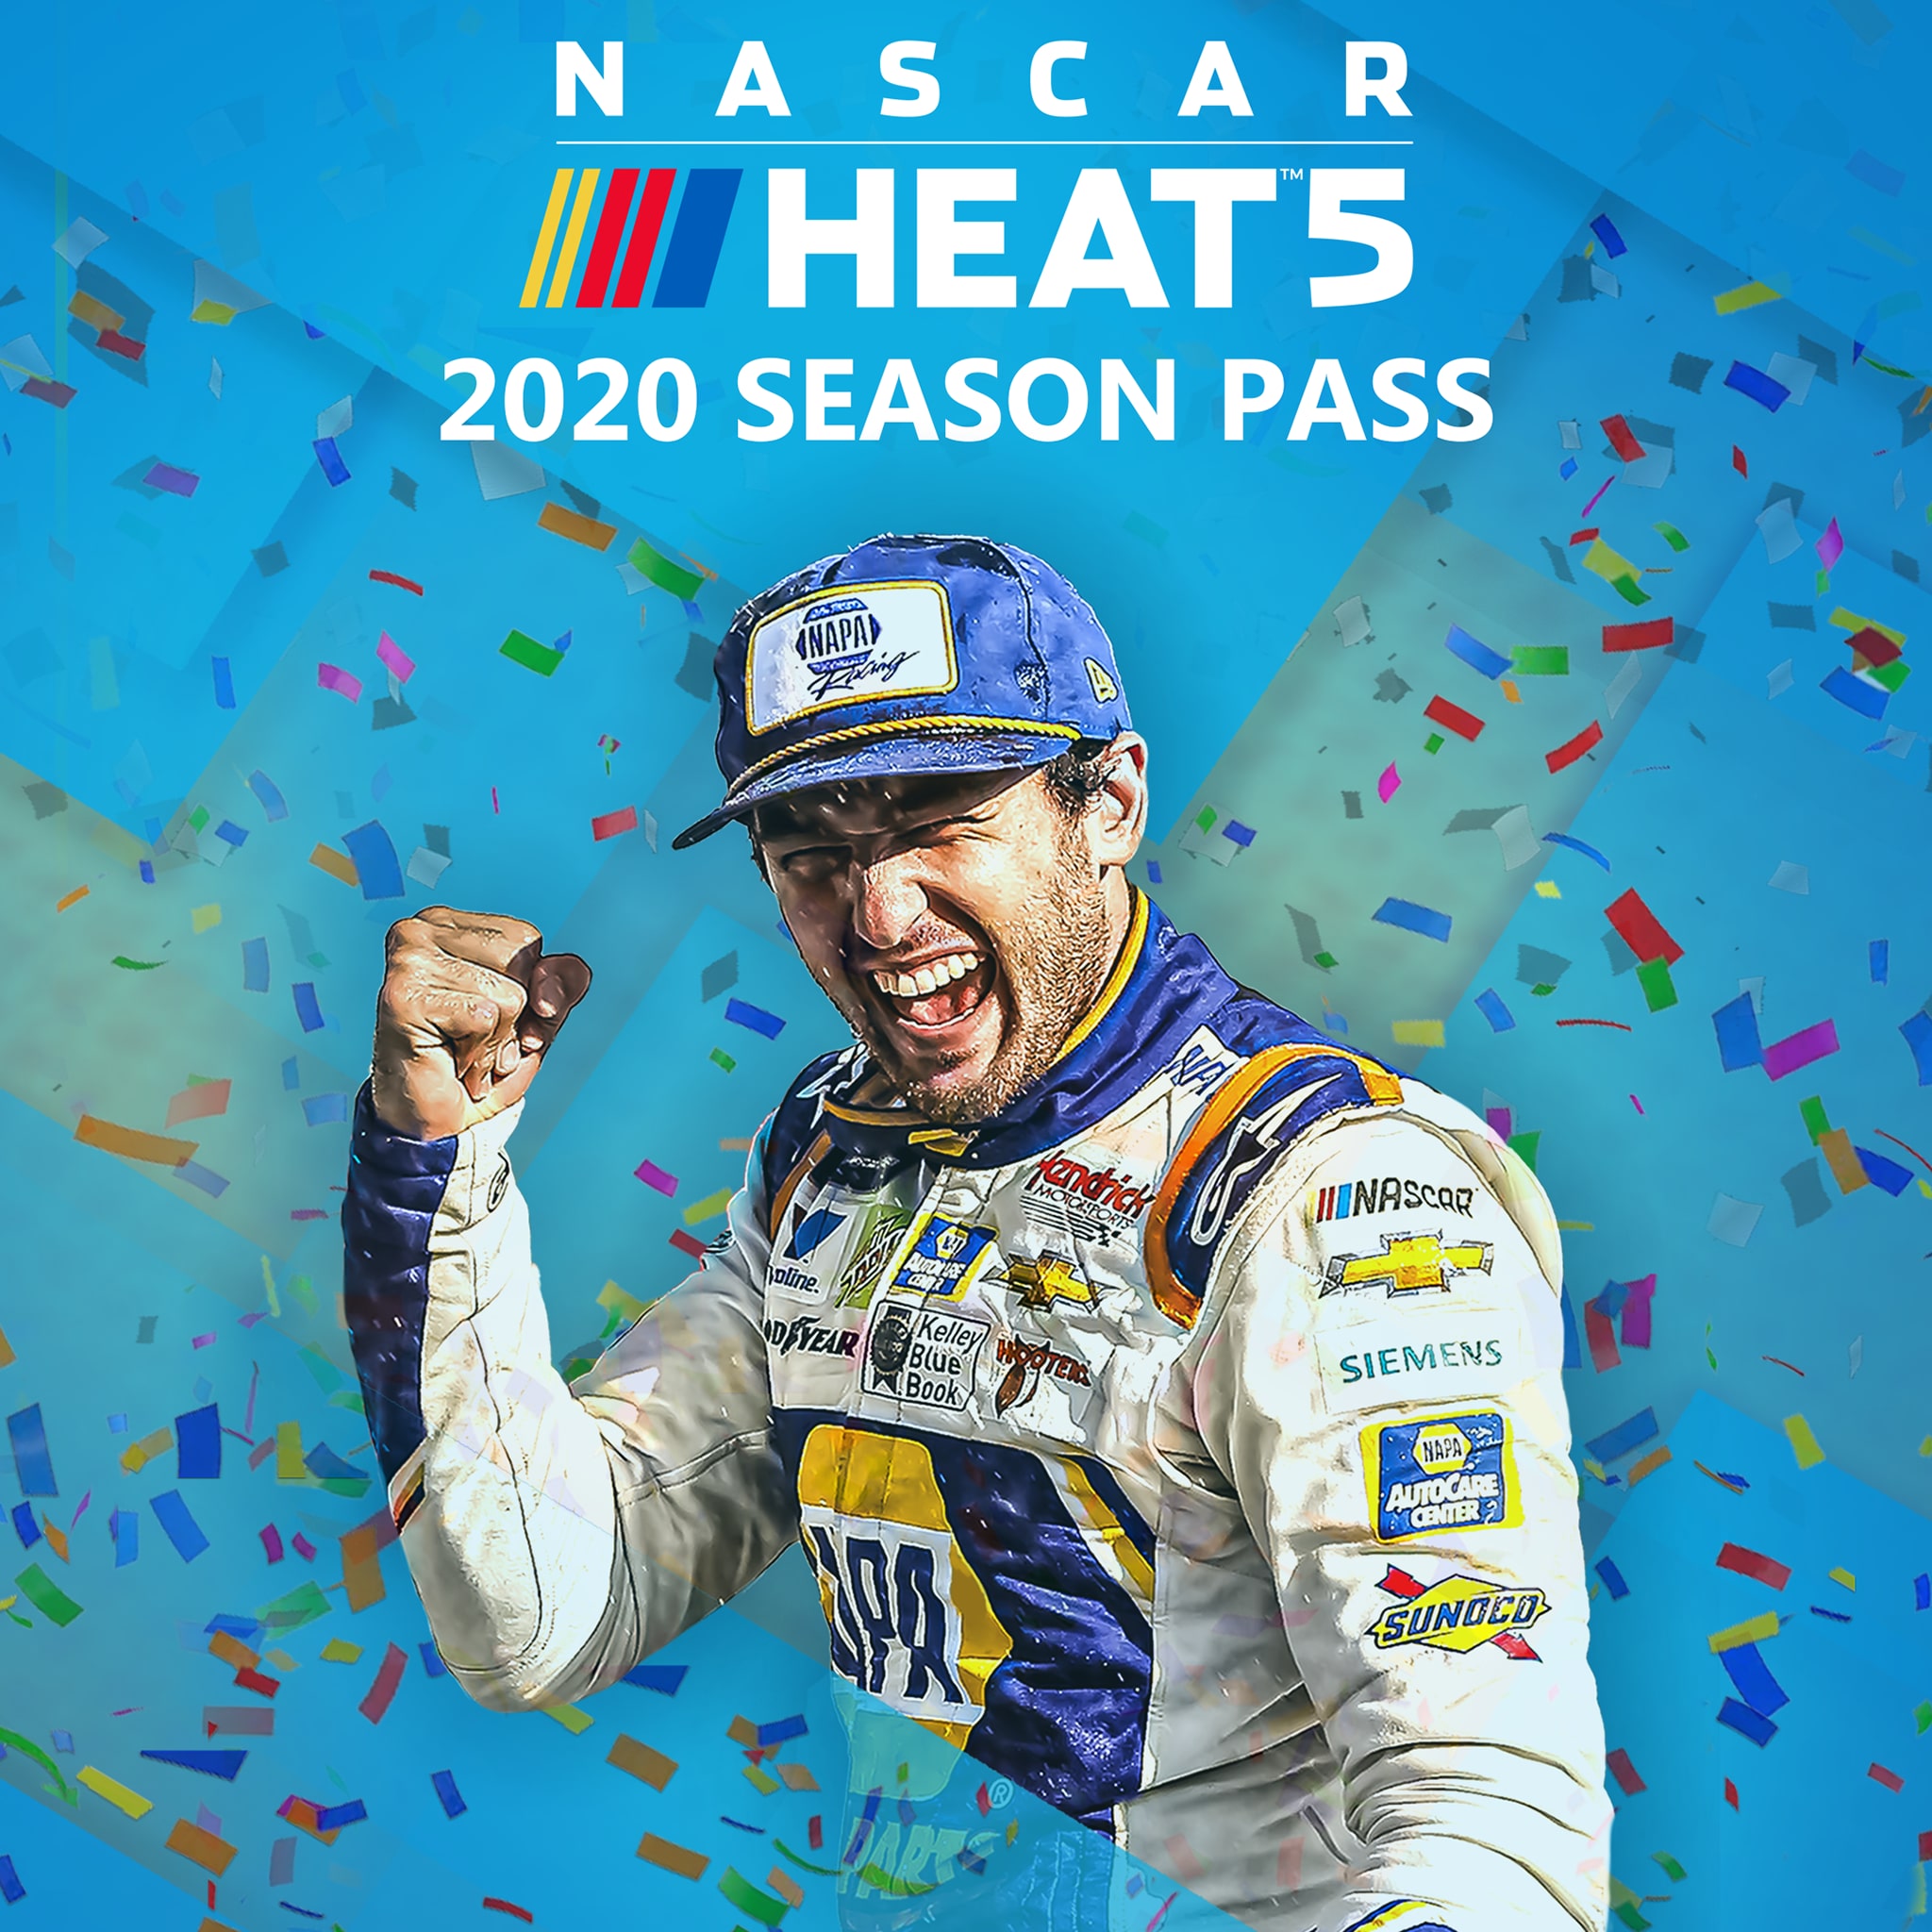 NASCAR Heat 5 - Season Pass